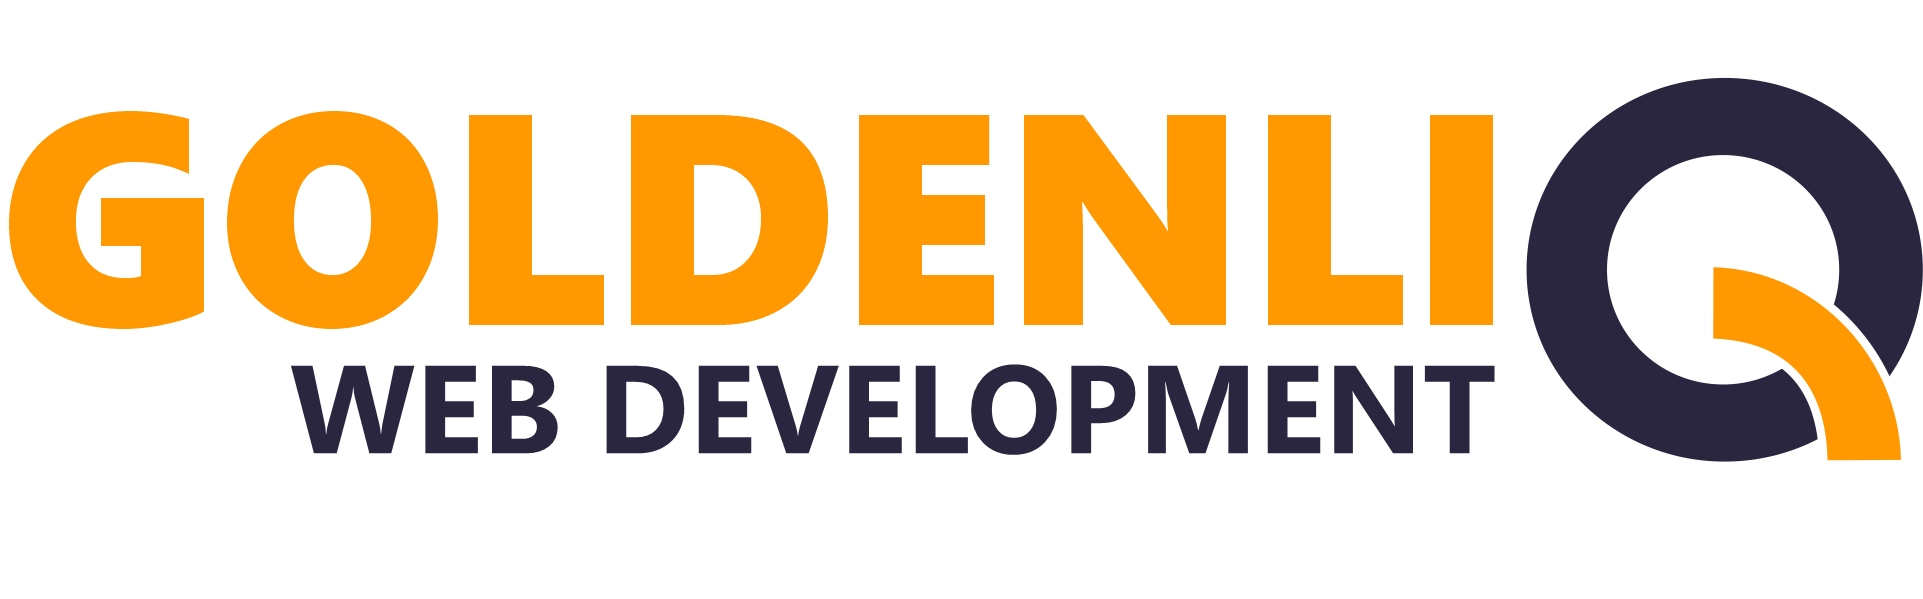 Goldenliq Web Development